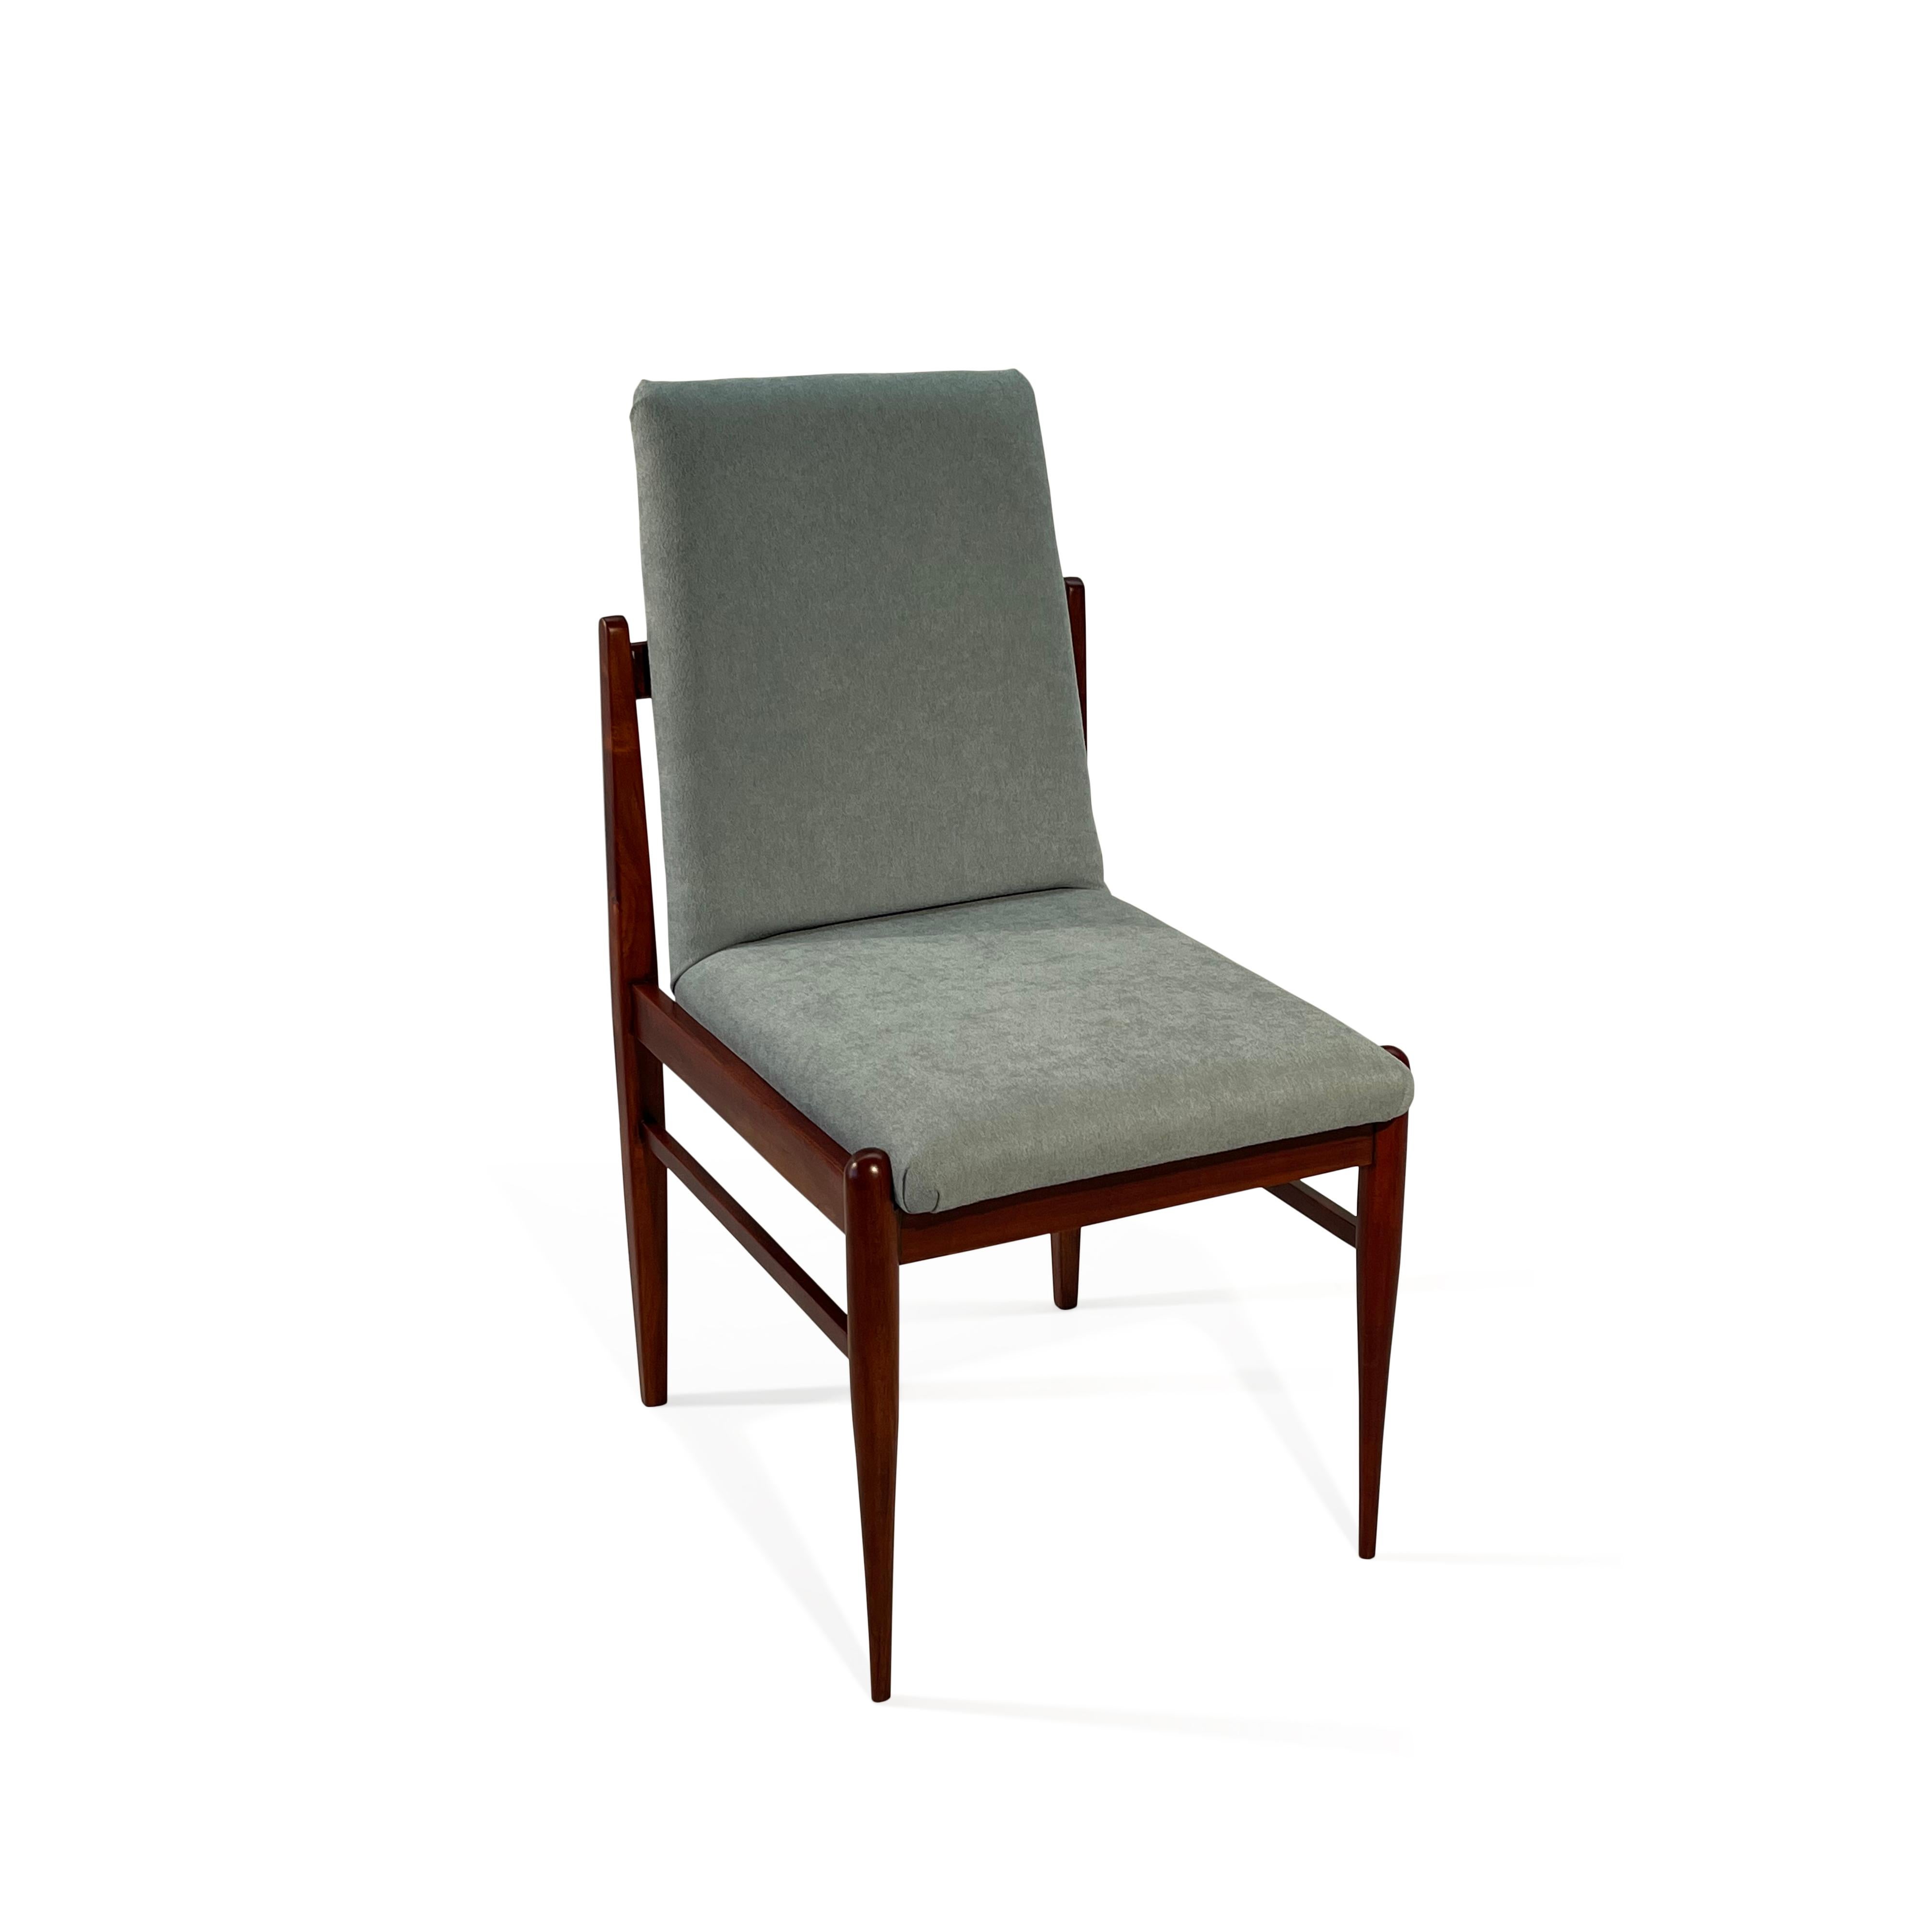 Ces 4 rares chaises de salle à manger en bois dur ont été fabriquées dans les années 1960 par la société brésilienne Móveis Cimo, un pionnier de la fabrication de meubles brésiliens qui a existé de 1921 à 1982.
Móveis Cimo a fermé ses portes en